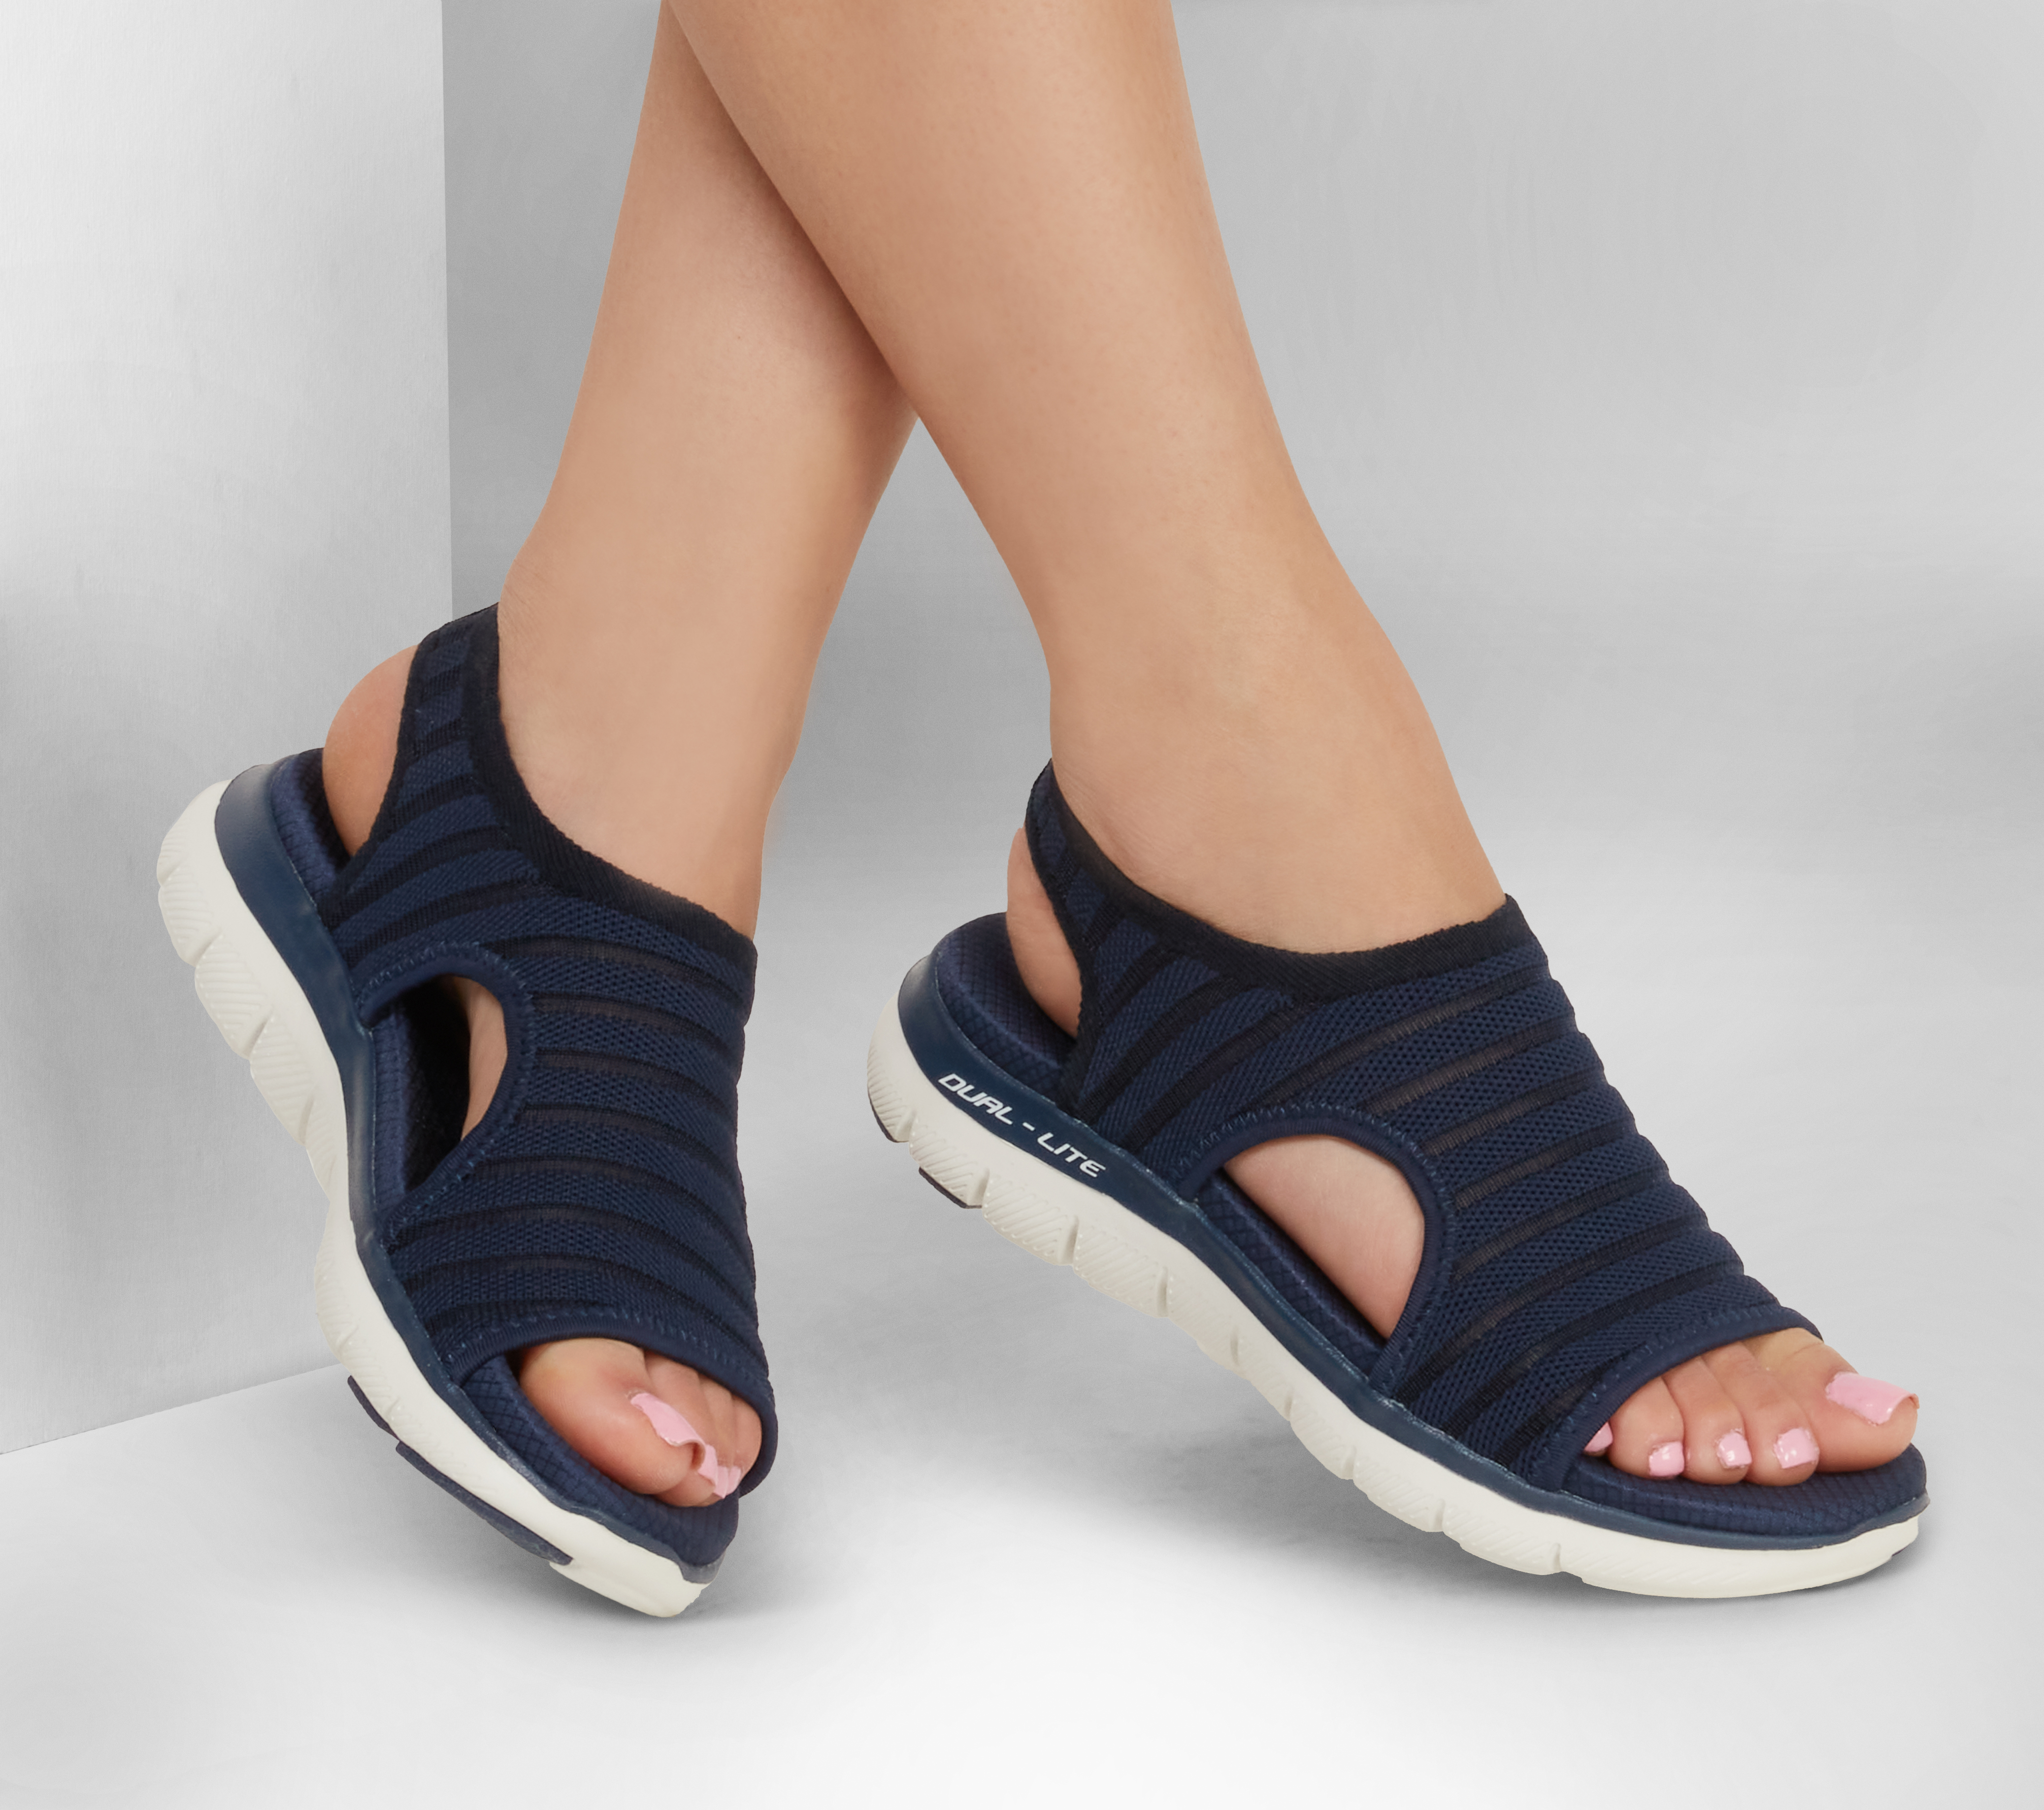 skechers flex appeal 2.0 new image women's slip-on shoes